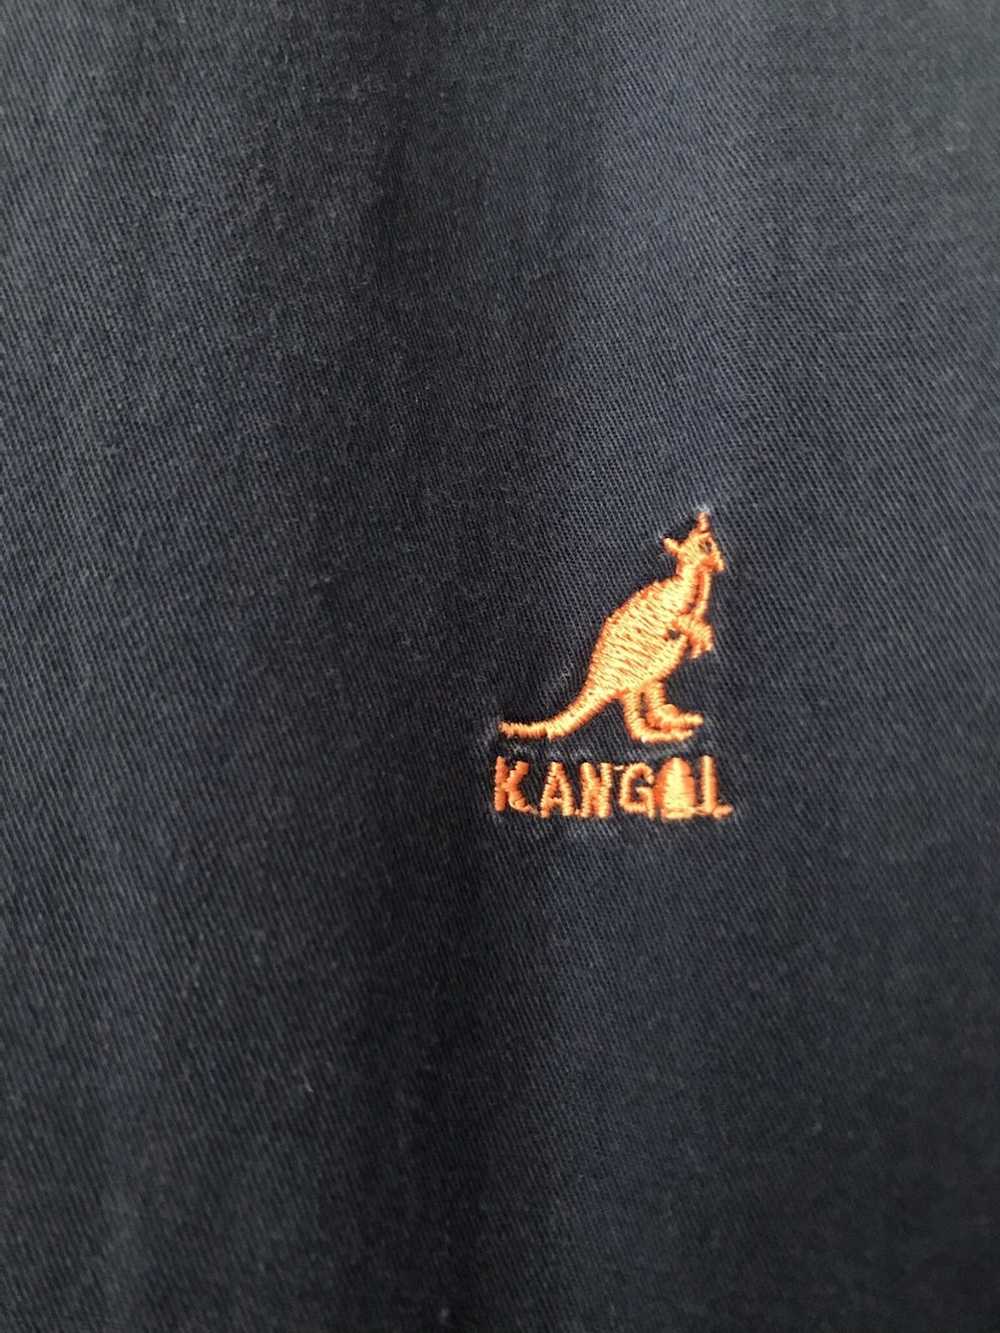 Kangol Oversized Kangol faded button up shirt - image 5